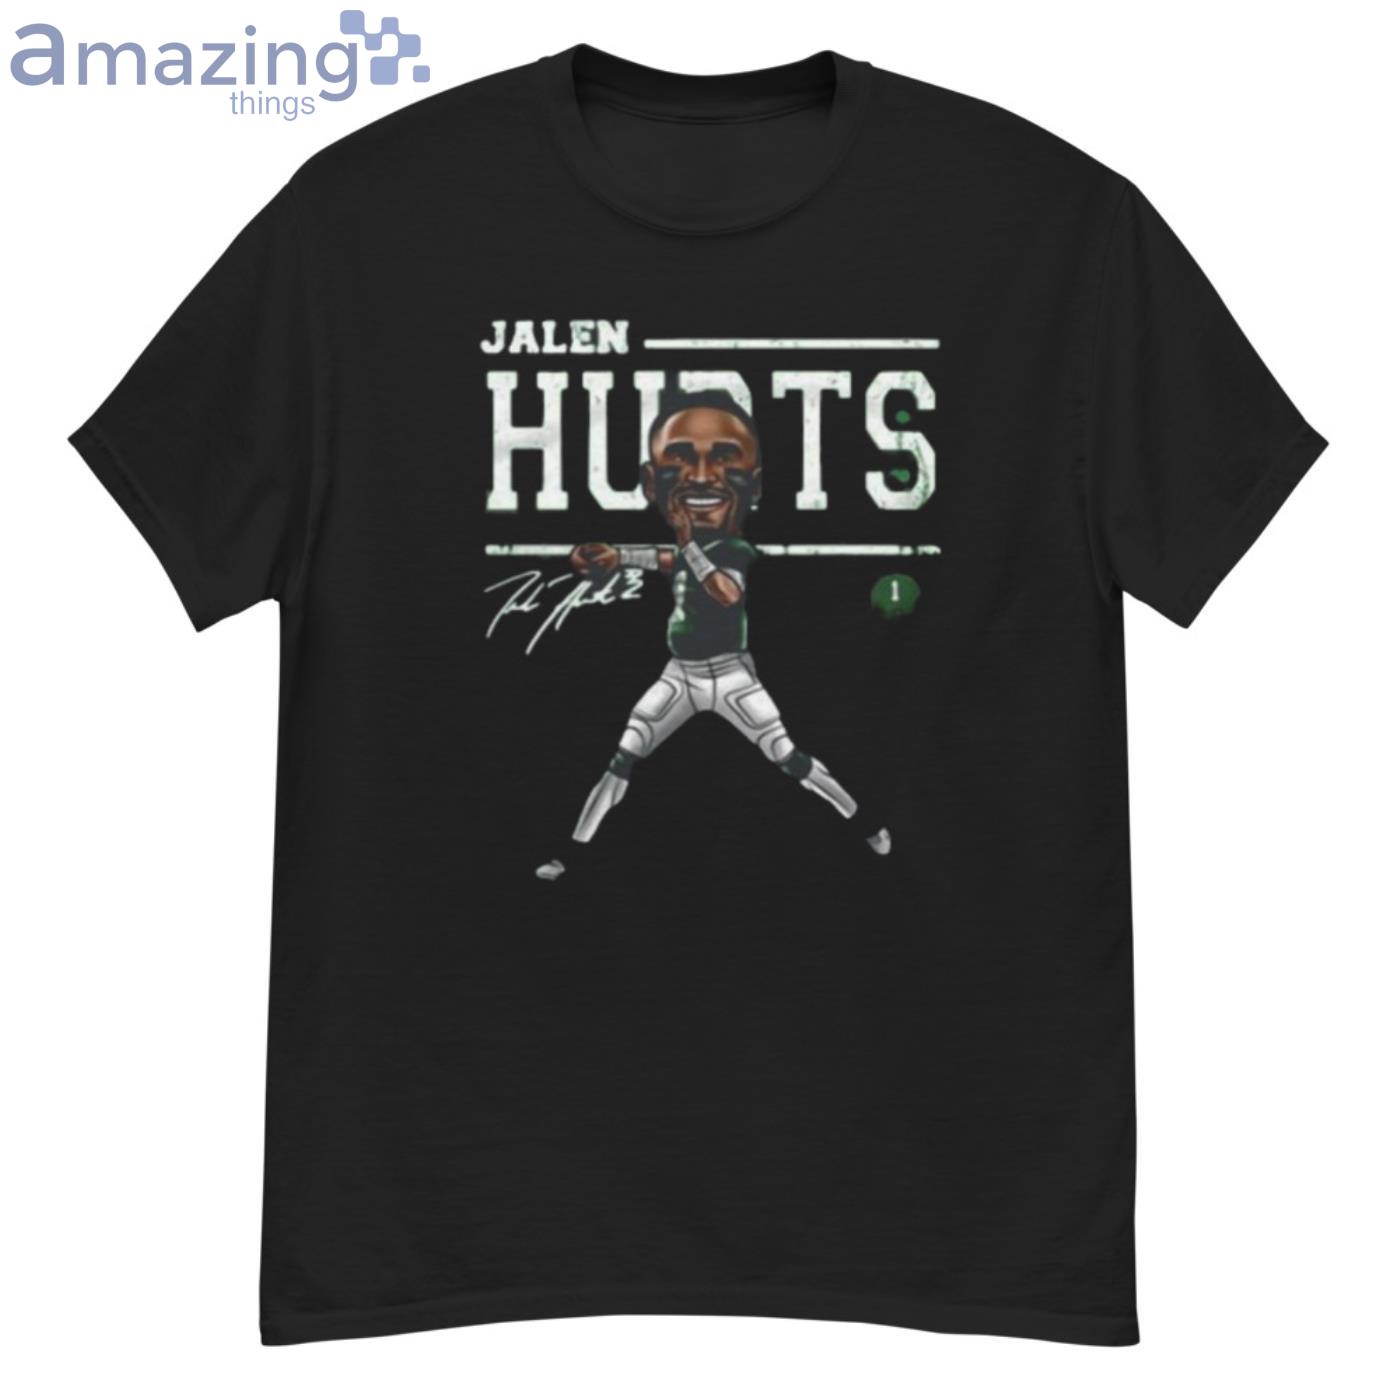 Jalen Hurts Philadelphia Eagles Cartoon Signature T-Shirt - G500 Men’s Classic T-Shirt